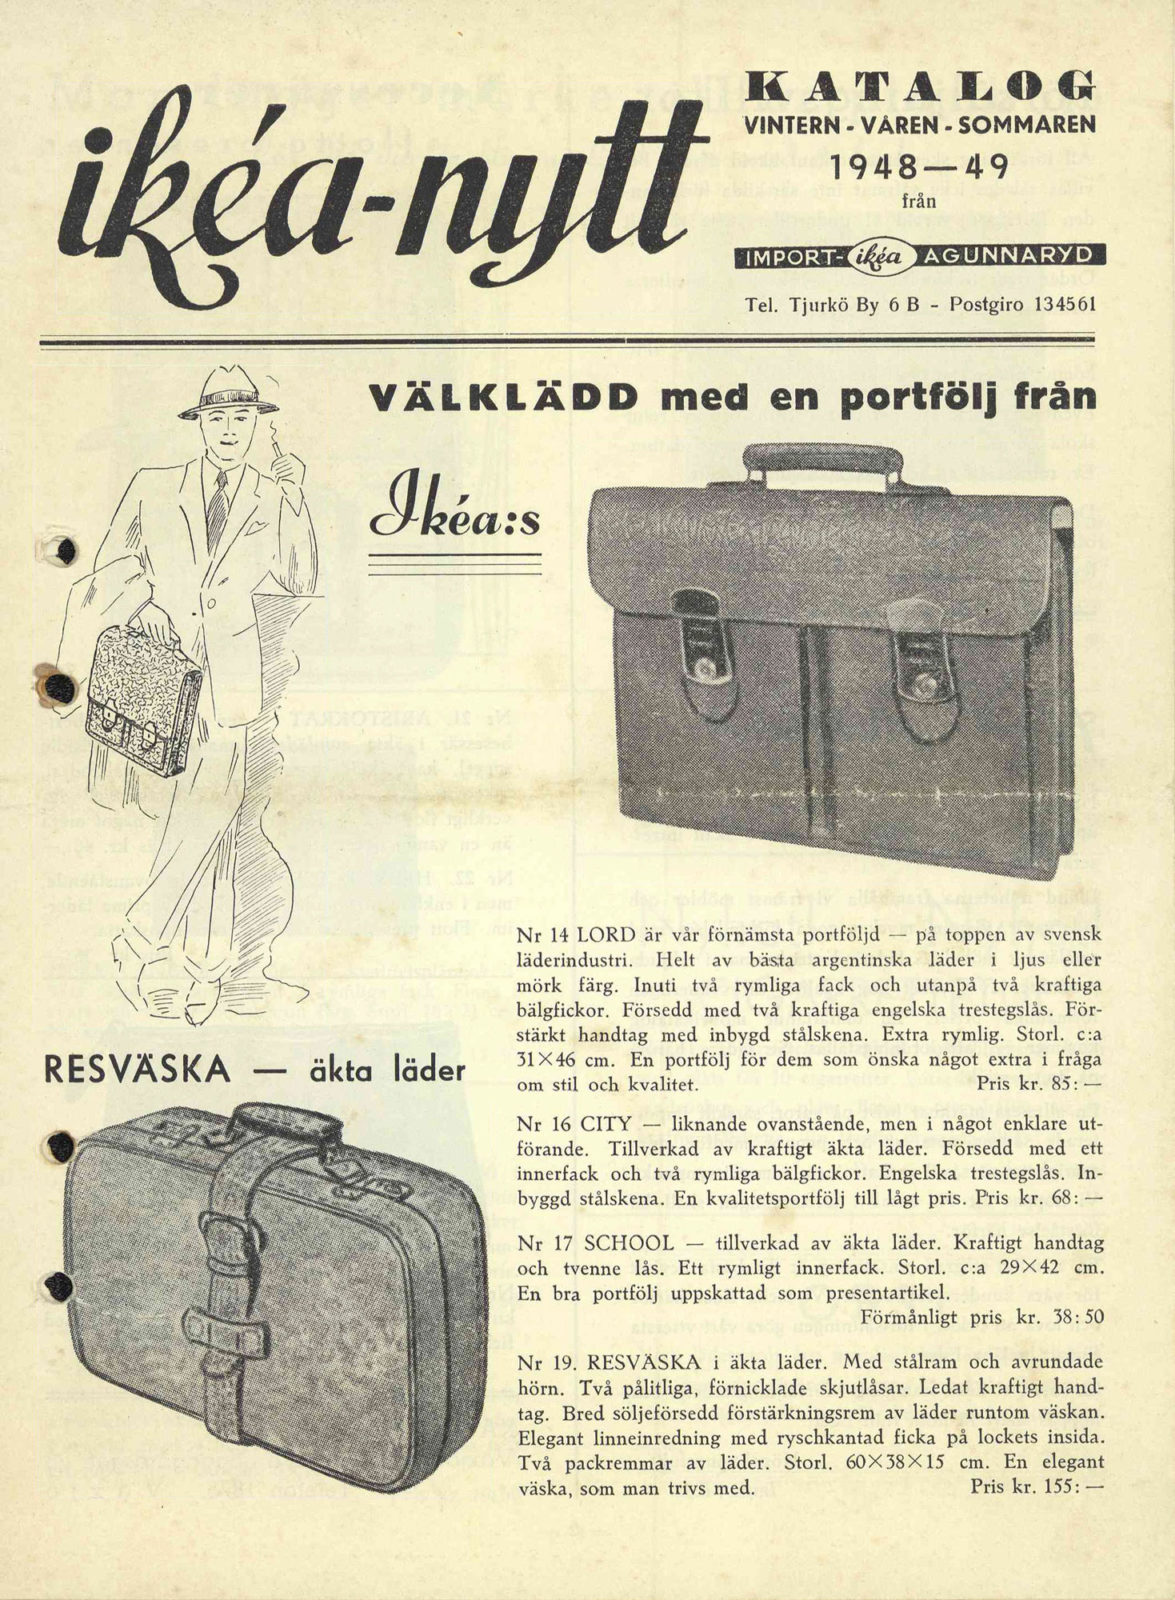 Sida ur katalog från IKEA med bilder av resväskor och portföljer, 1948-49.